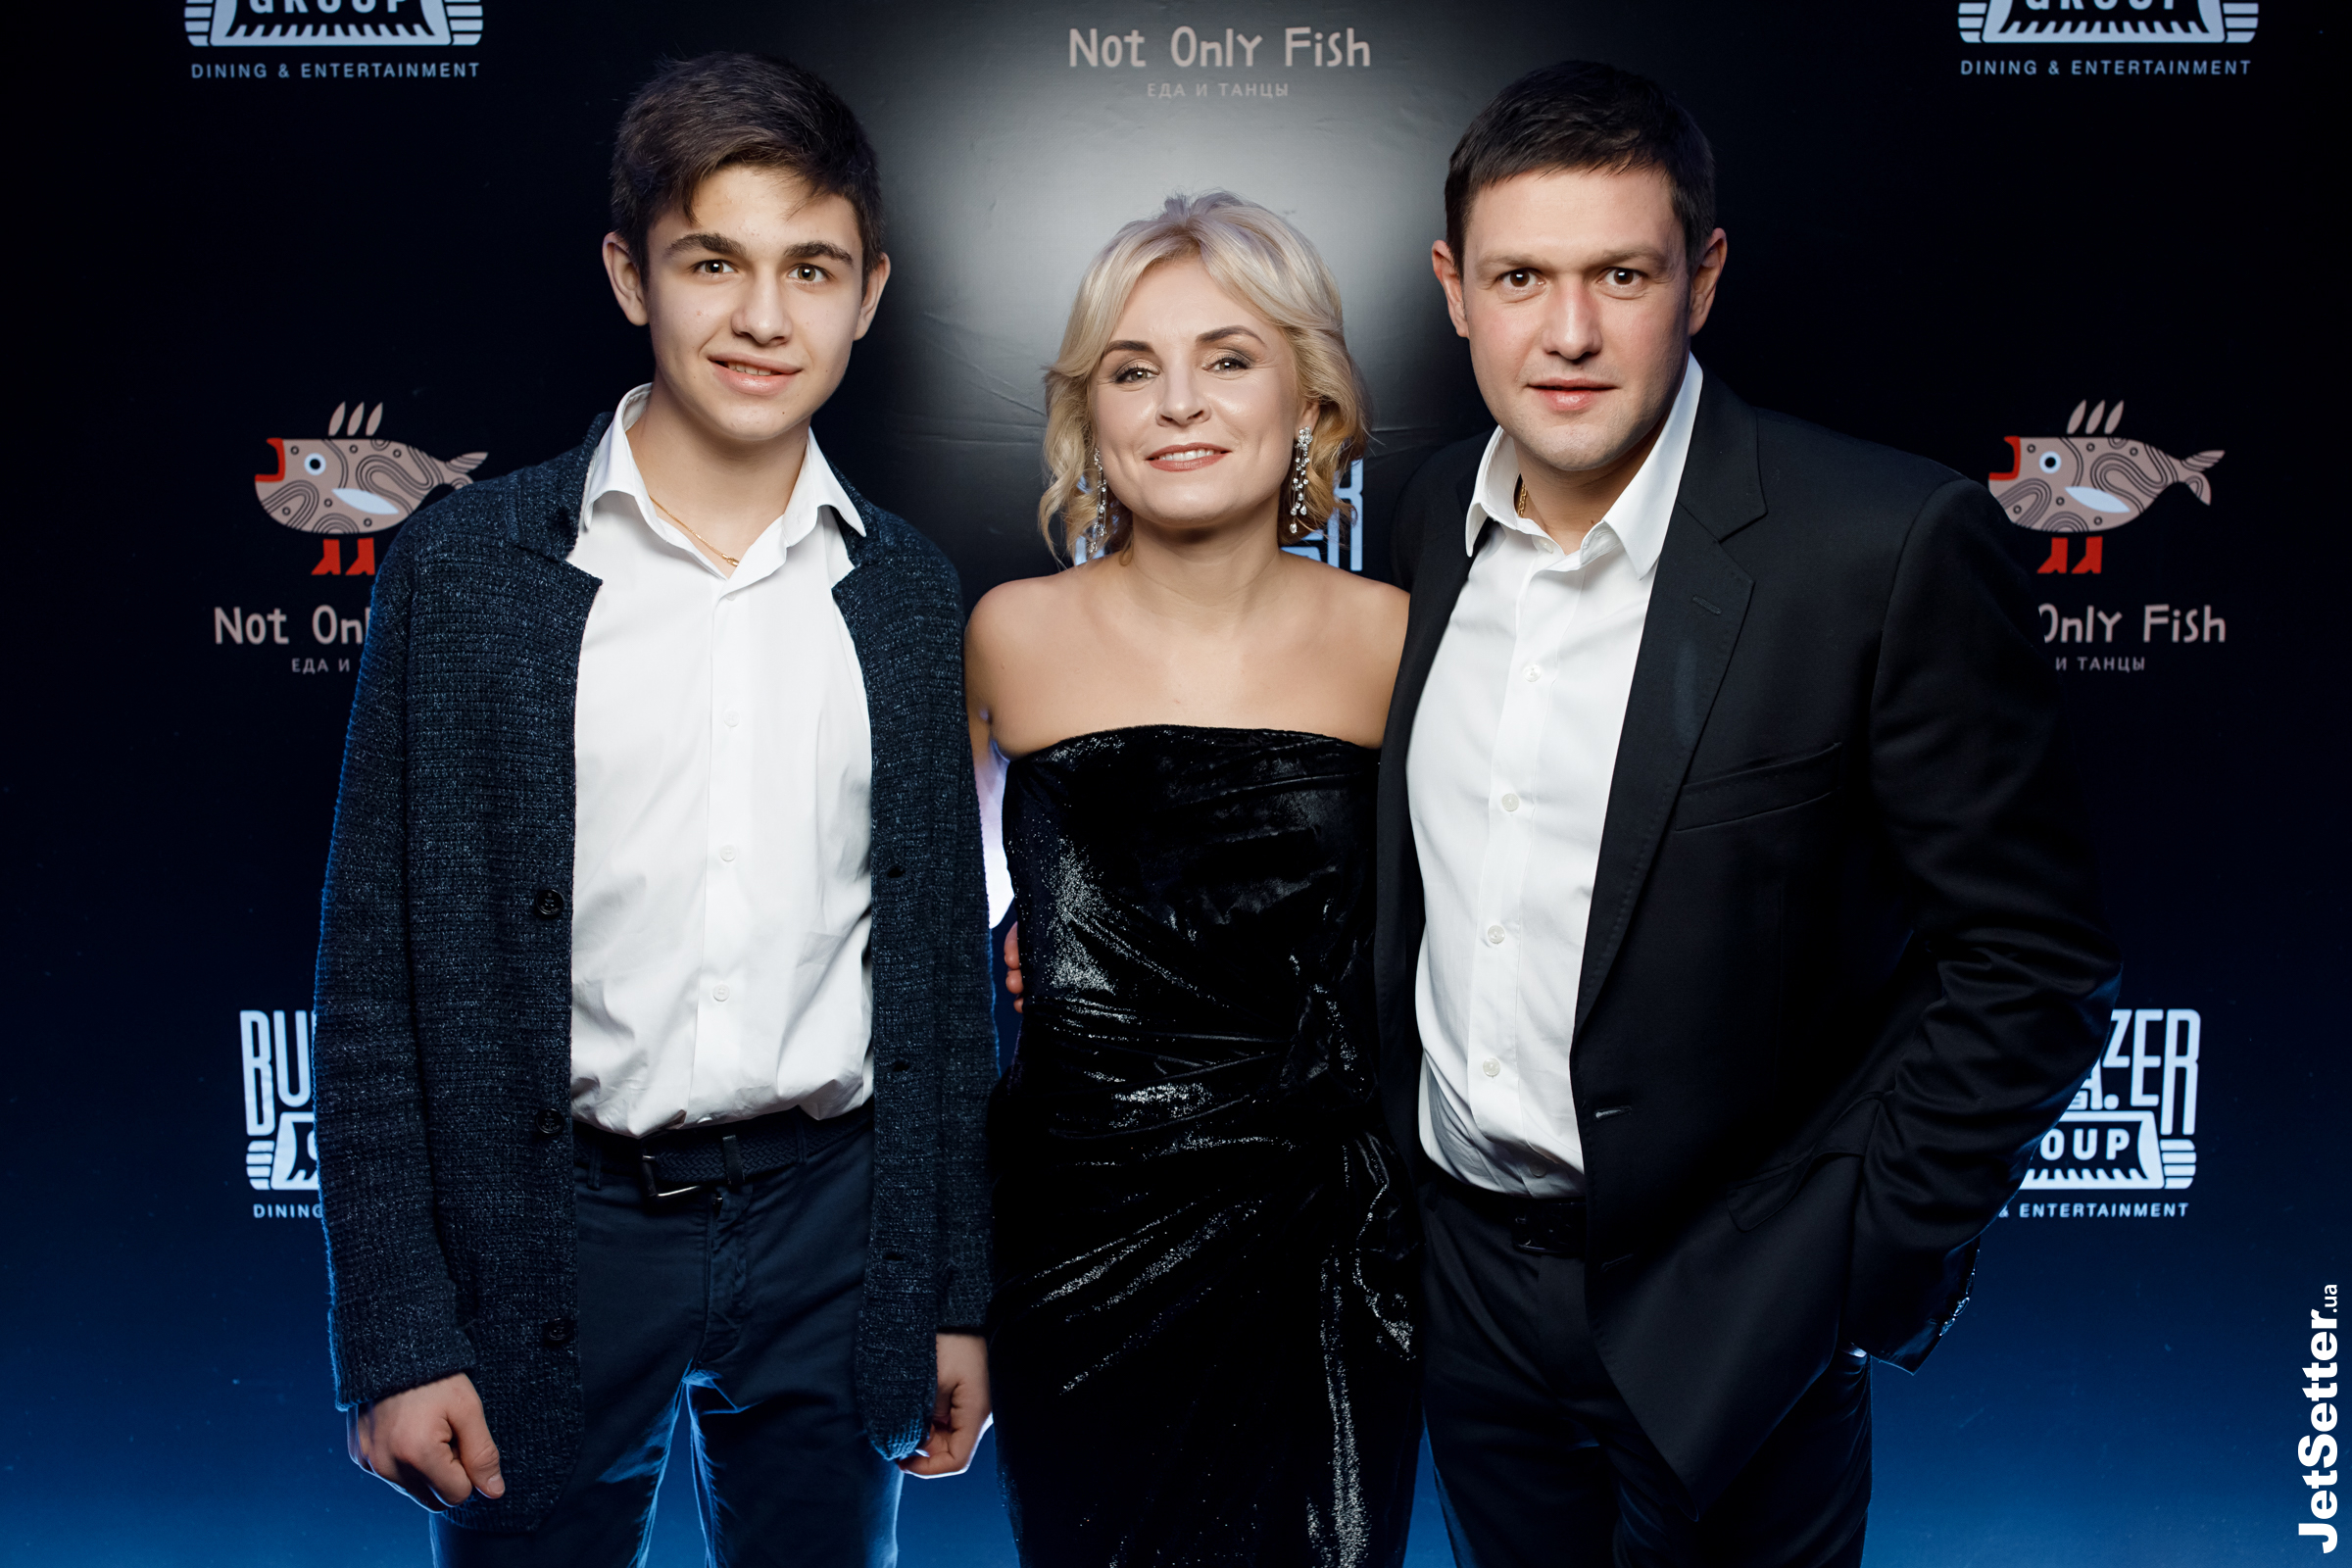 Співзасновник Not Only Fish — Денис Лялін із дружиною Олександрою та сином Євгеном.